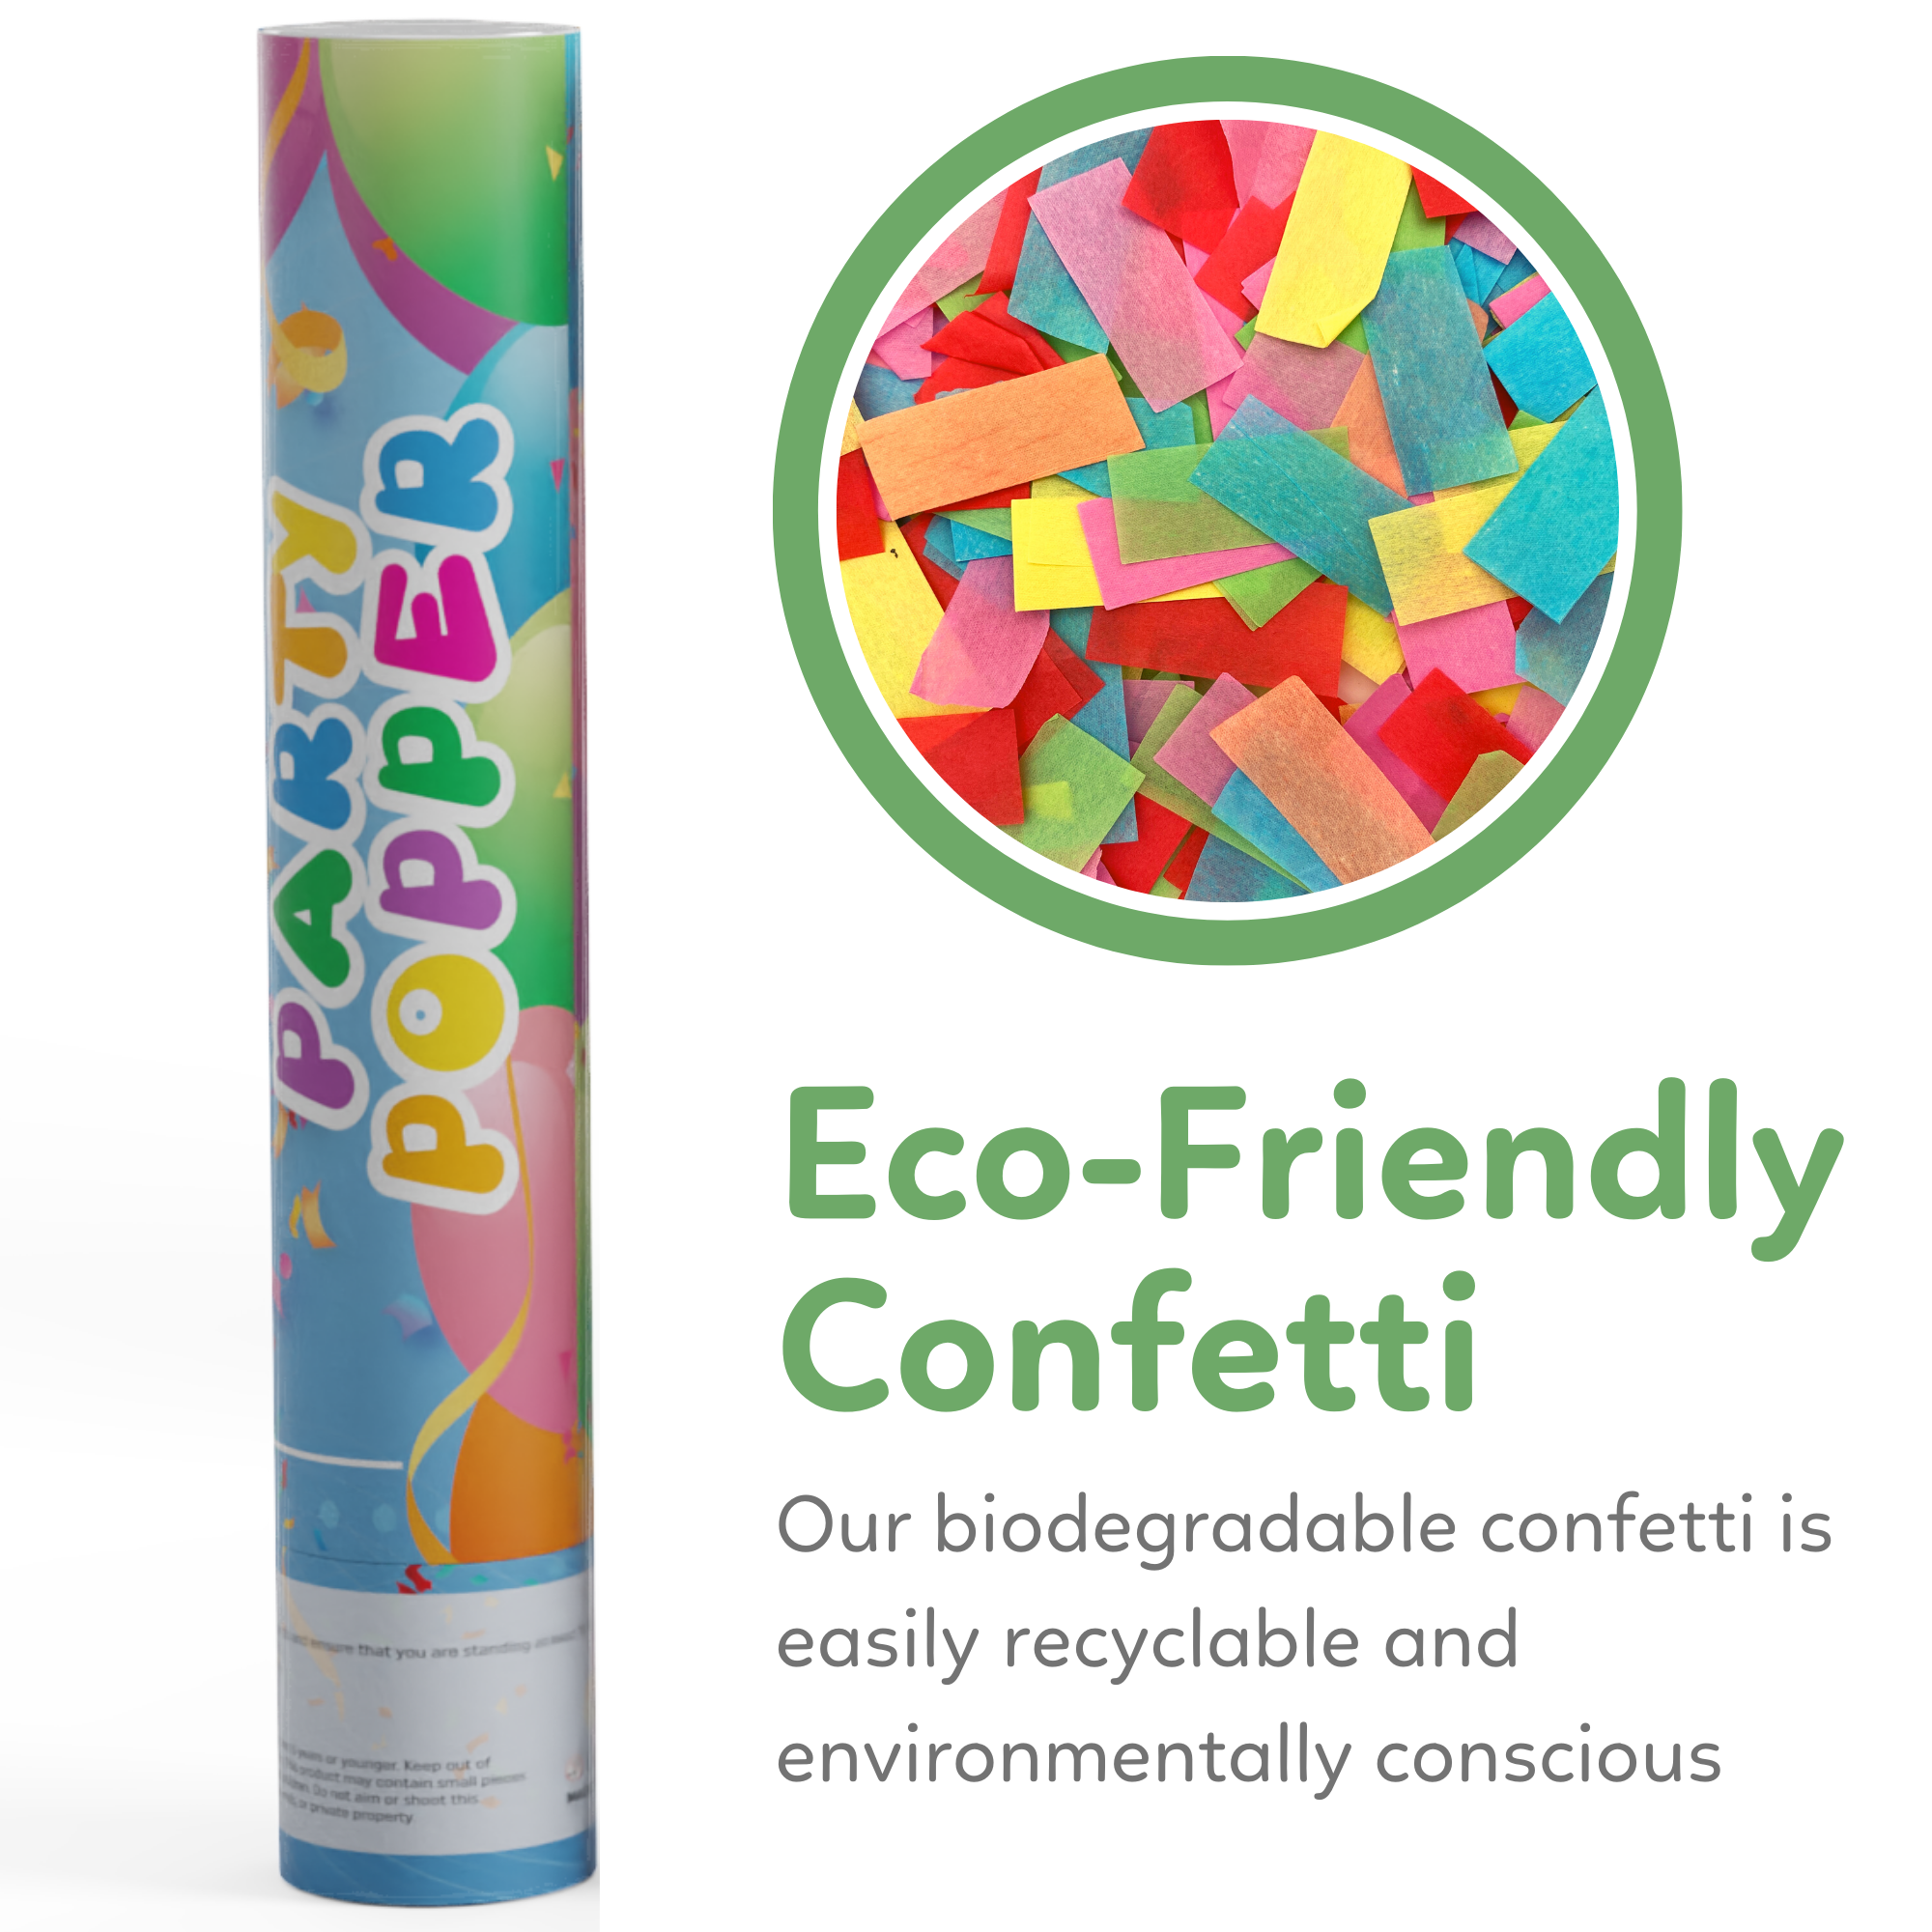 Confetti, 100% Biodegradable